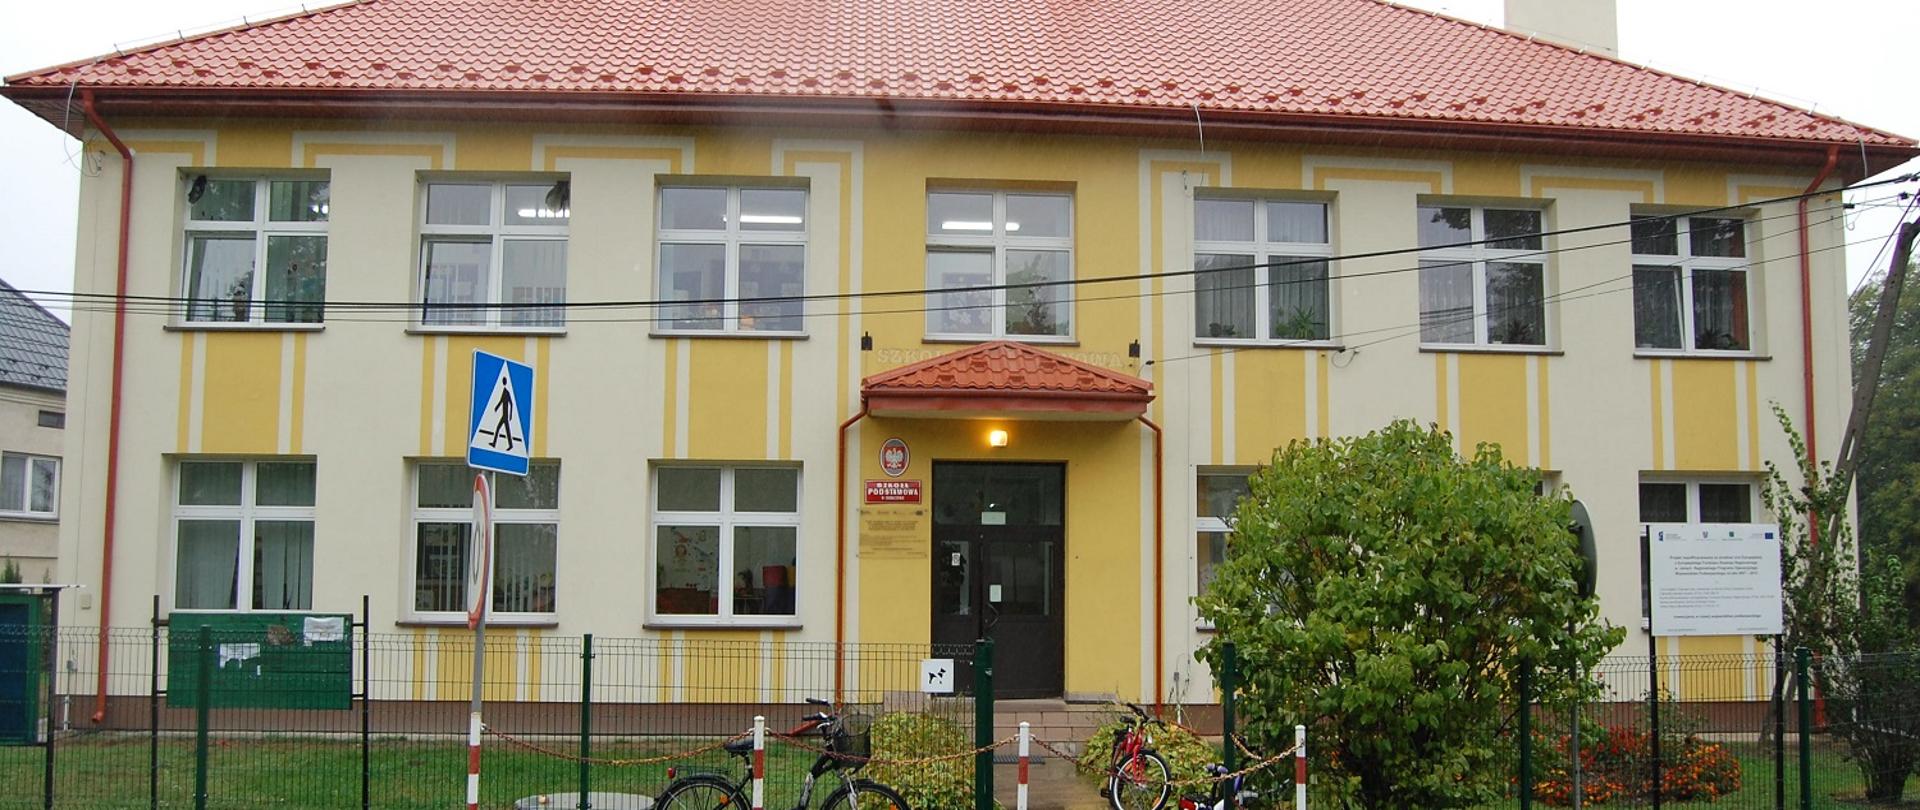 Biało - żółty budynek szkolny z czerwonym dachem. Przed budynkiem trzy rowery oparte o zielone ogrodzenie. 